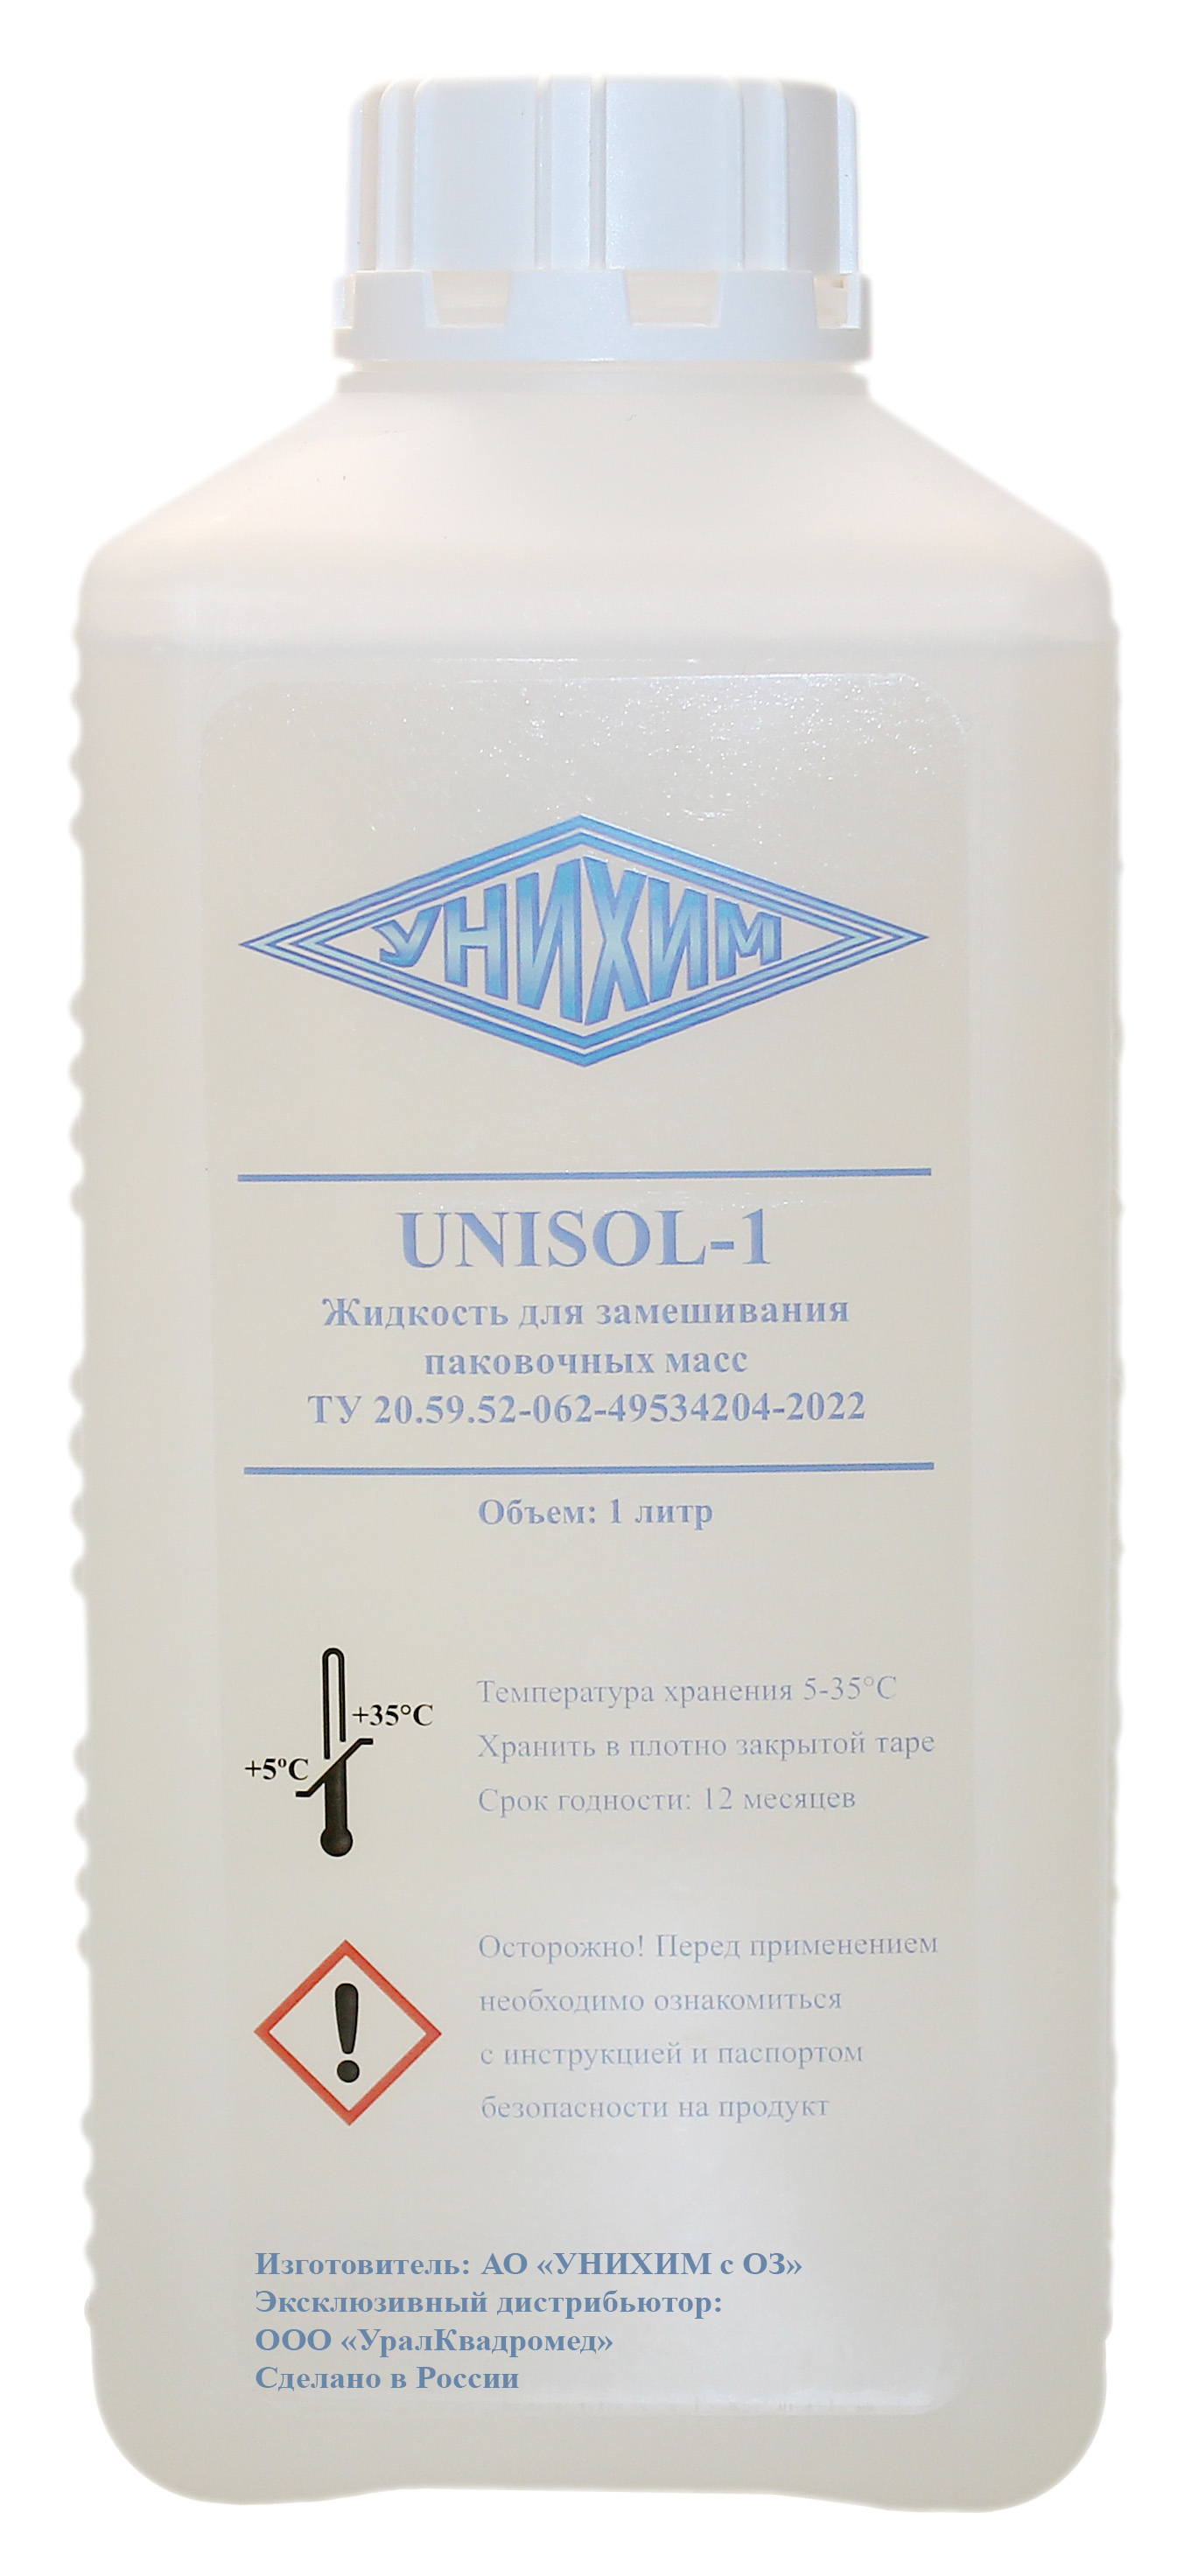 Жидкость UNISOL-1 для паковочной массы (1 л) УНИХИМ 00-00019644